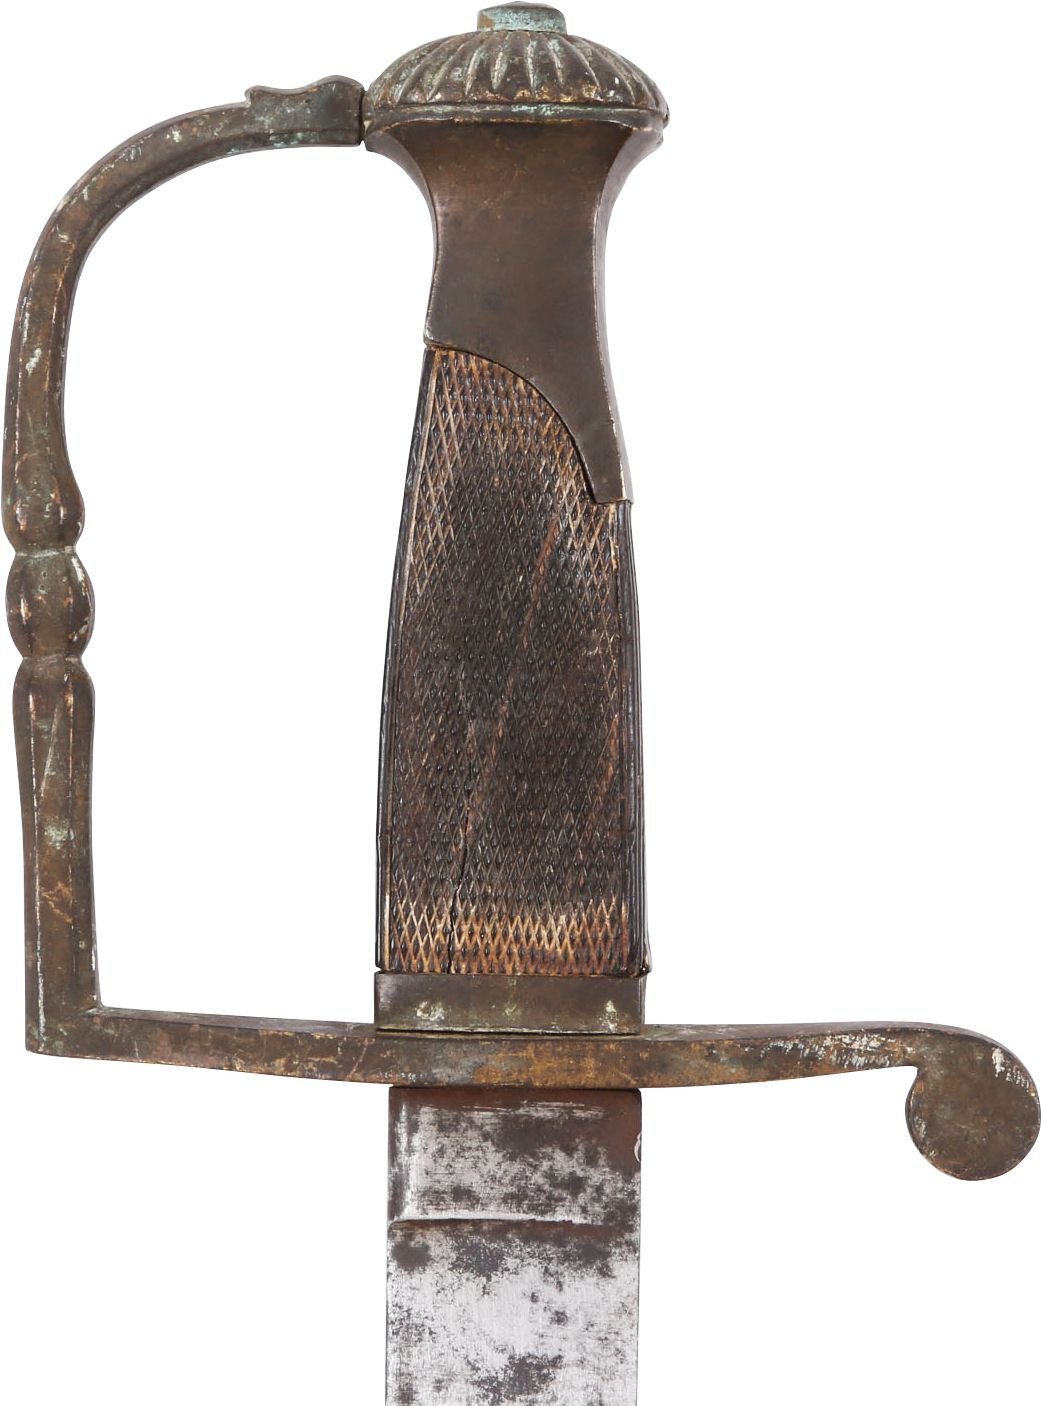 SARDINIAN NCO SWORD C.1850 - Fagan Arms